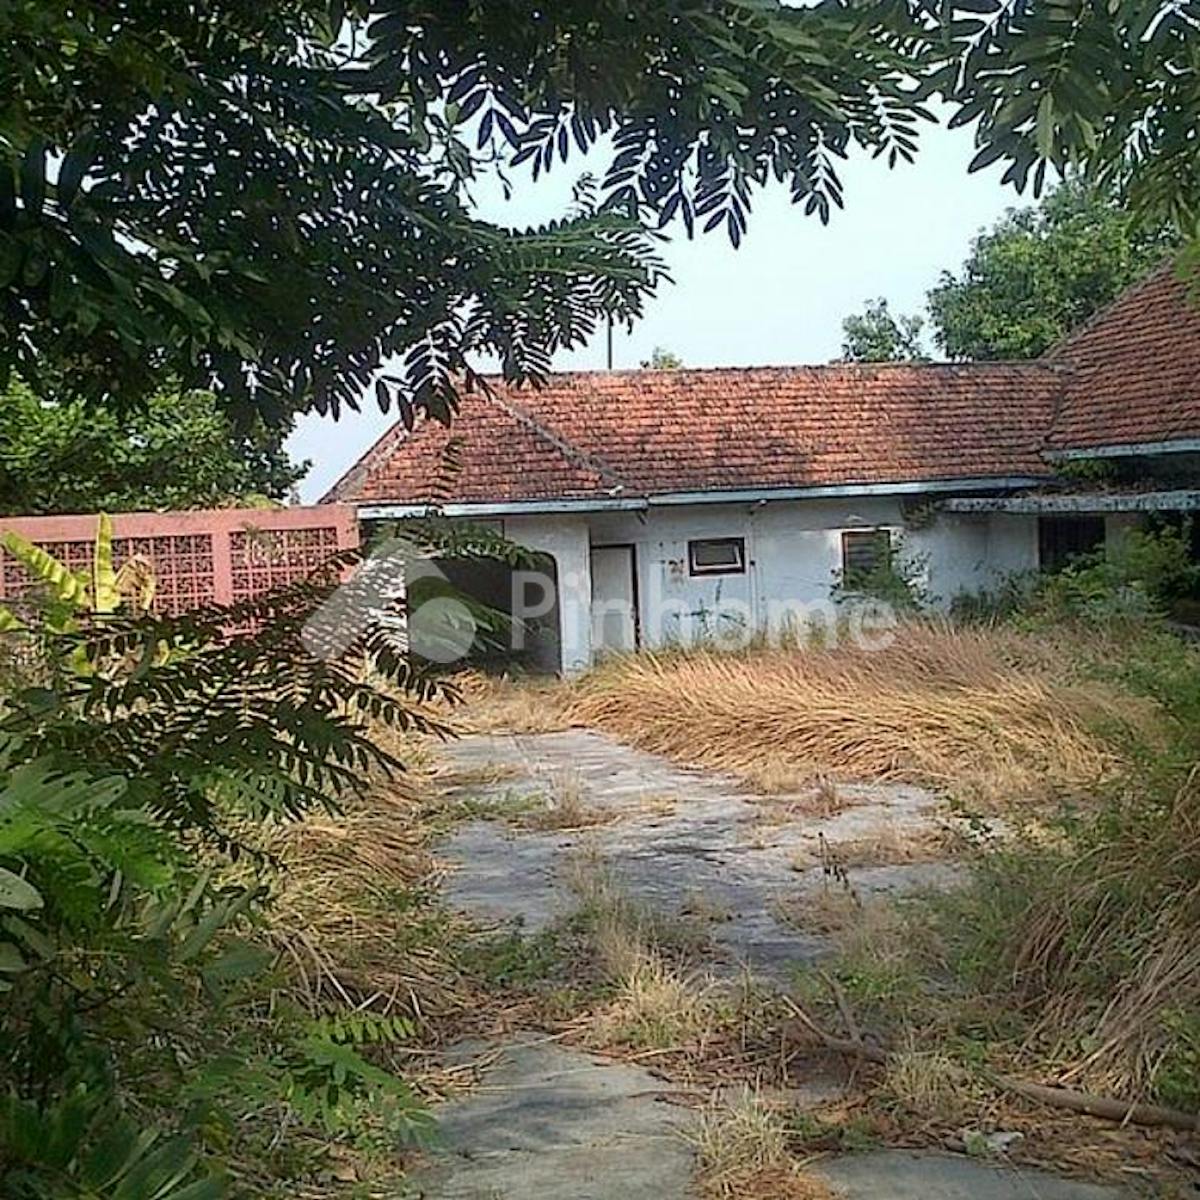 Dijual Tanah Residensial Sangat Cocok Untuk Investasi di Siranda,Semarang,Jawa Tengah - Gambar 1